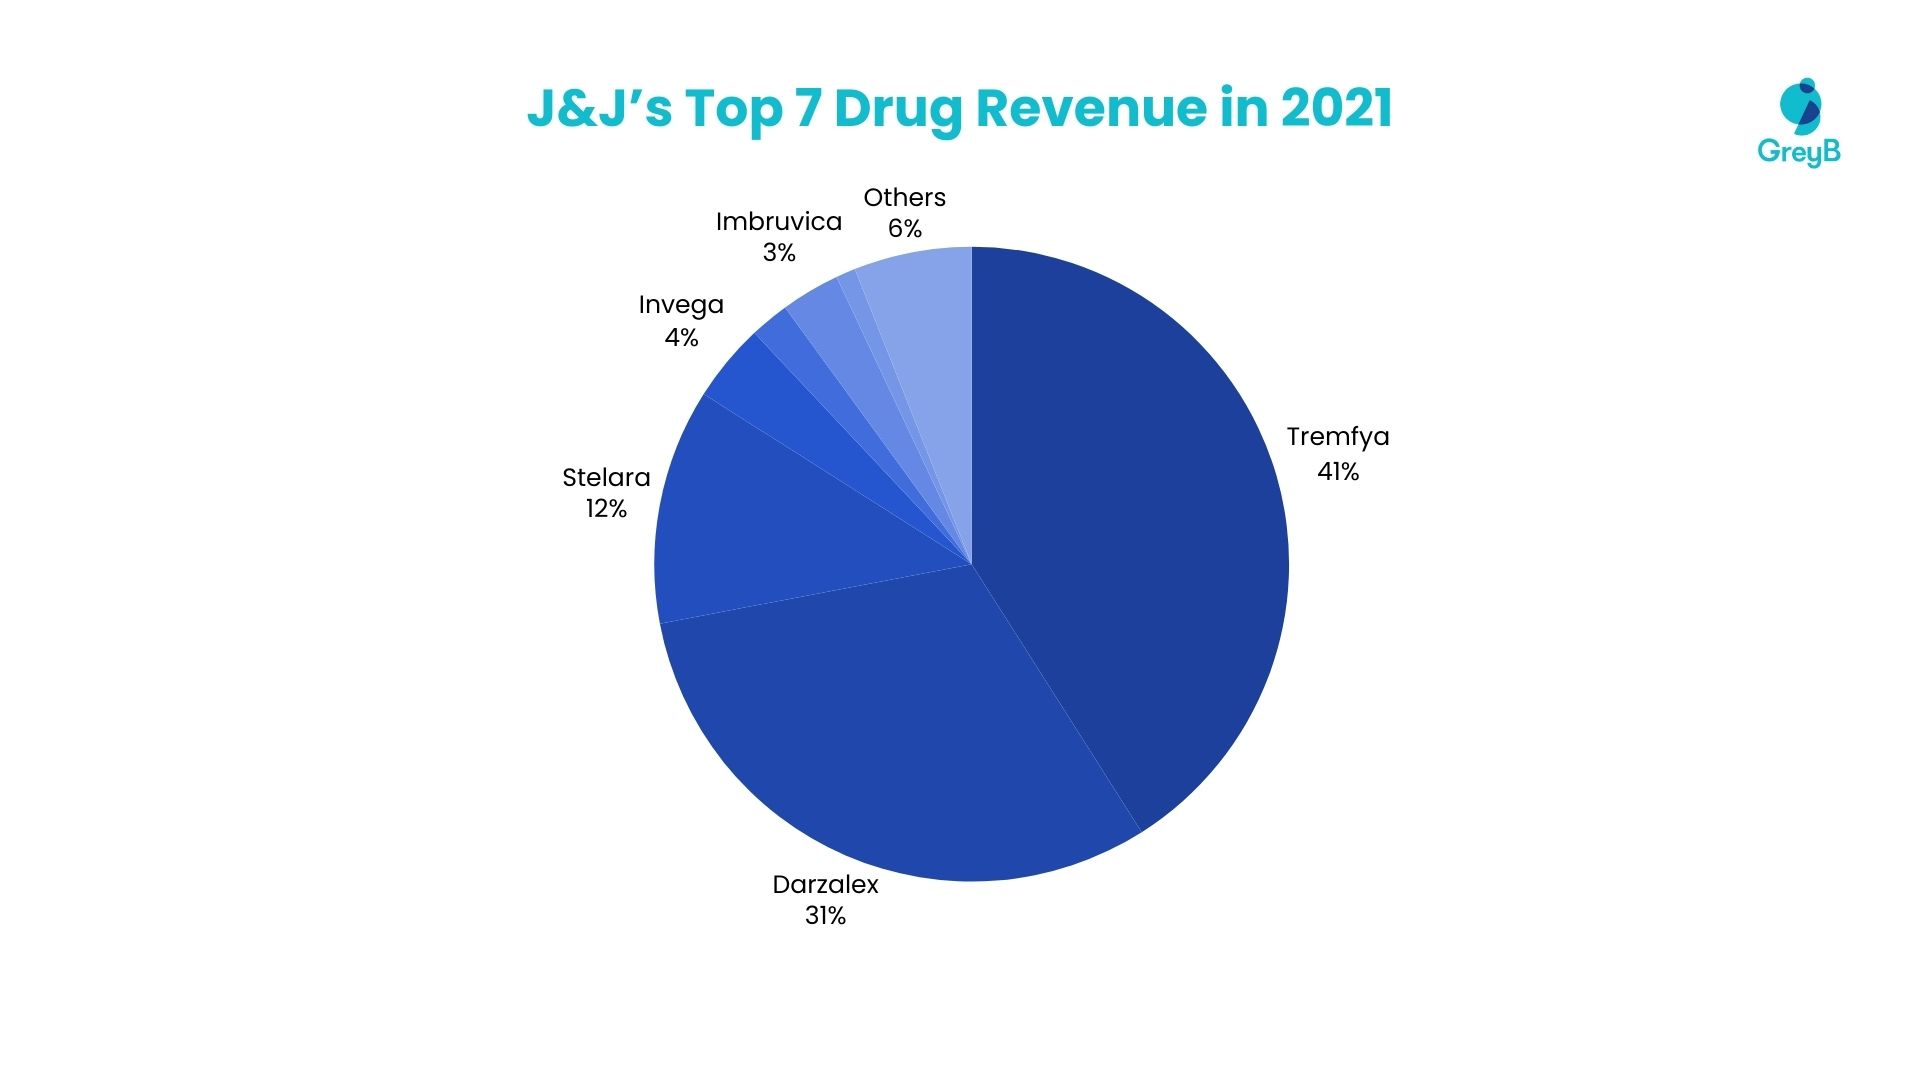 J&J’s Top 7 Drug Revenue in 2021